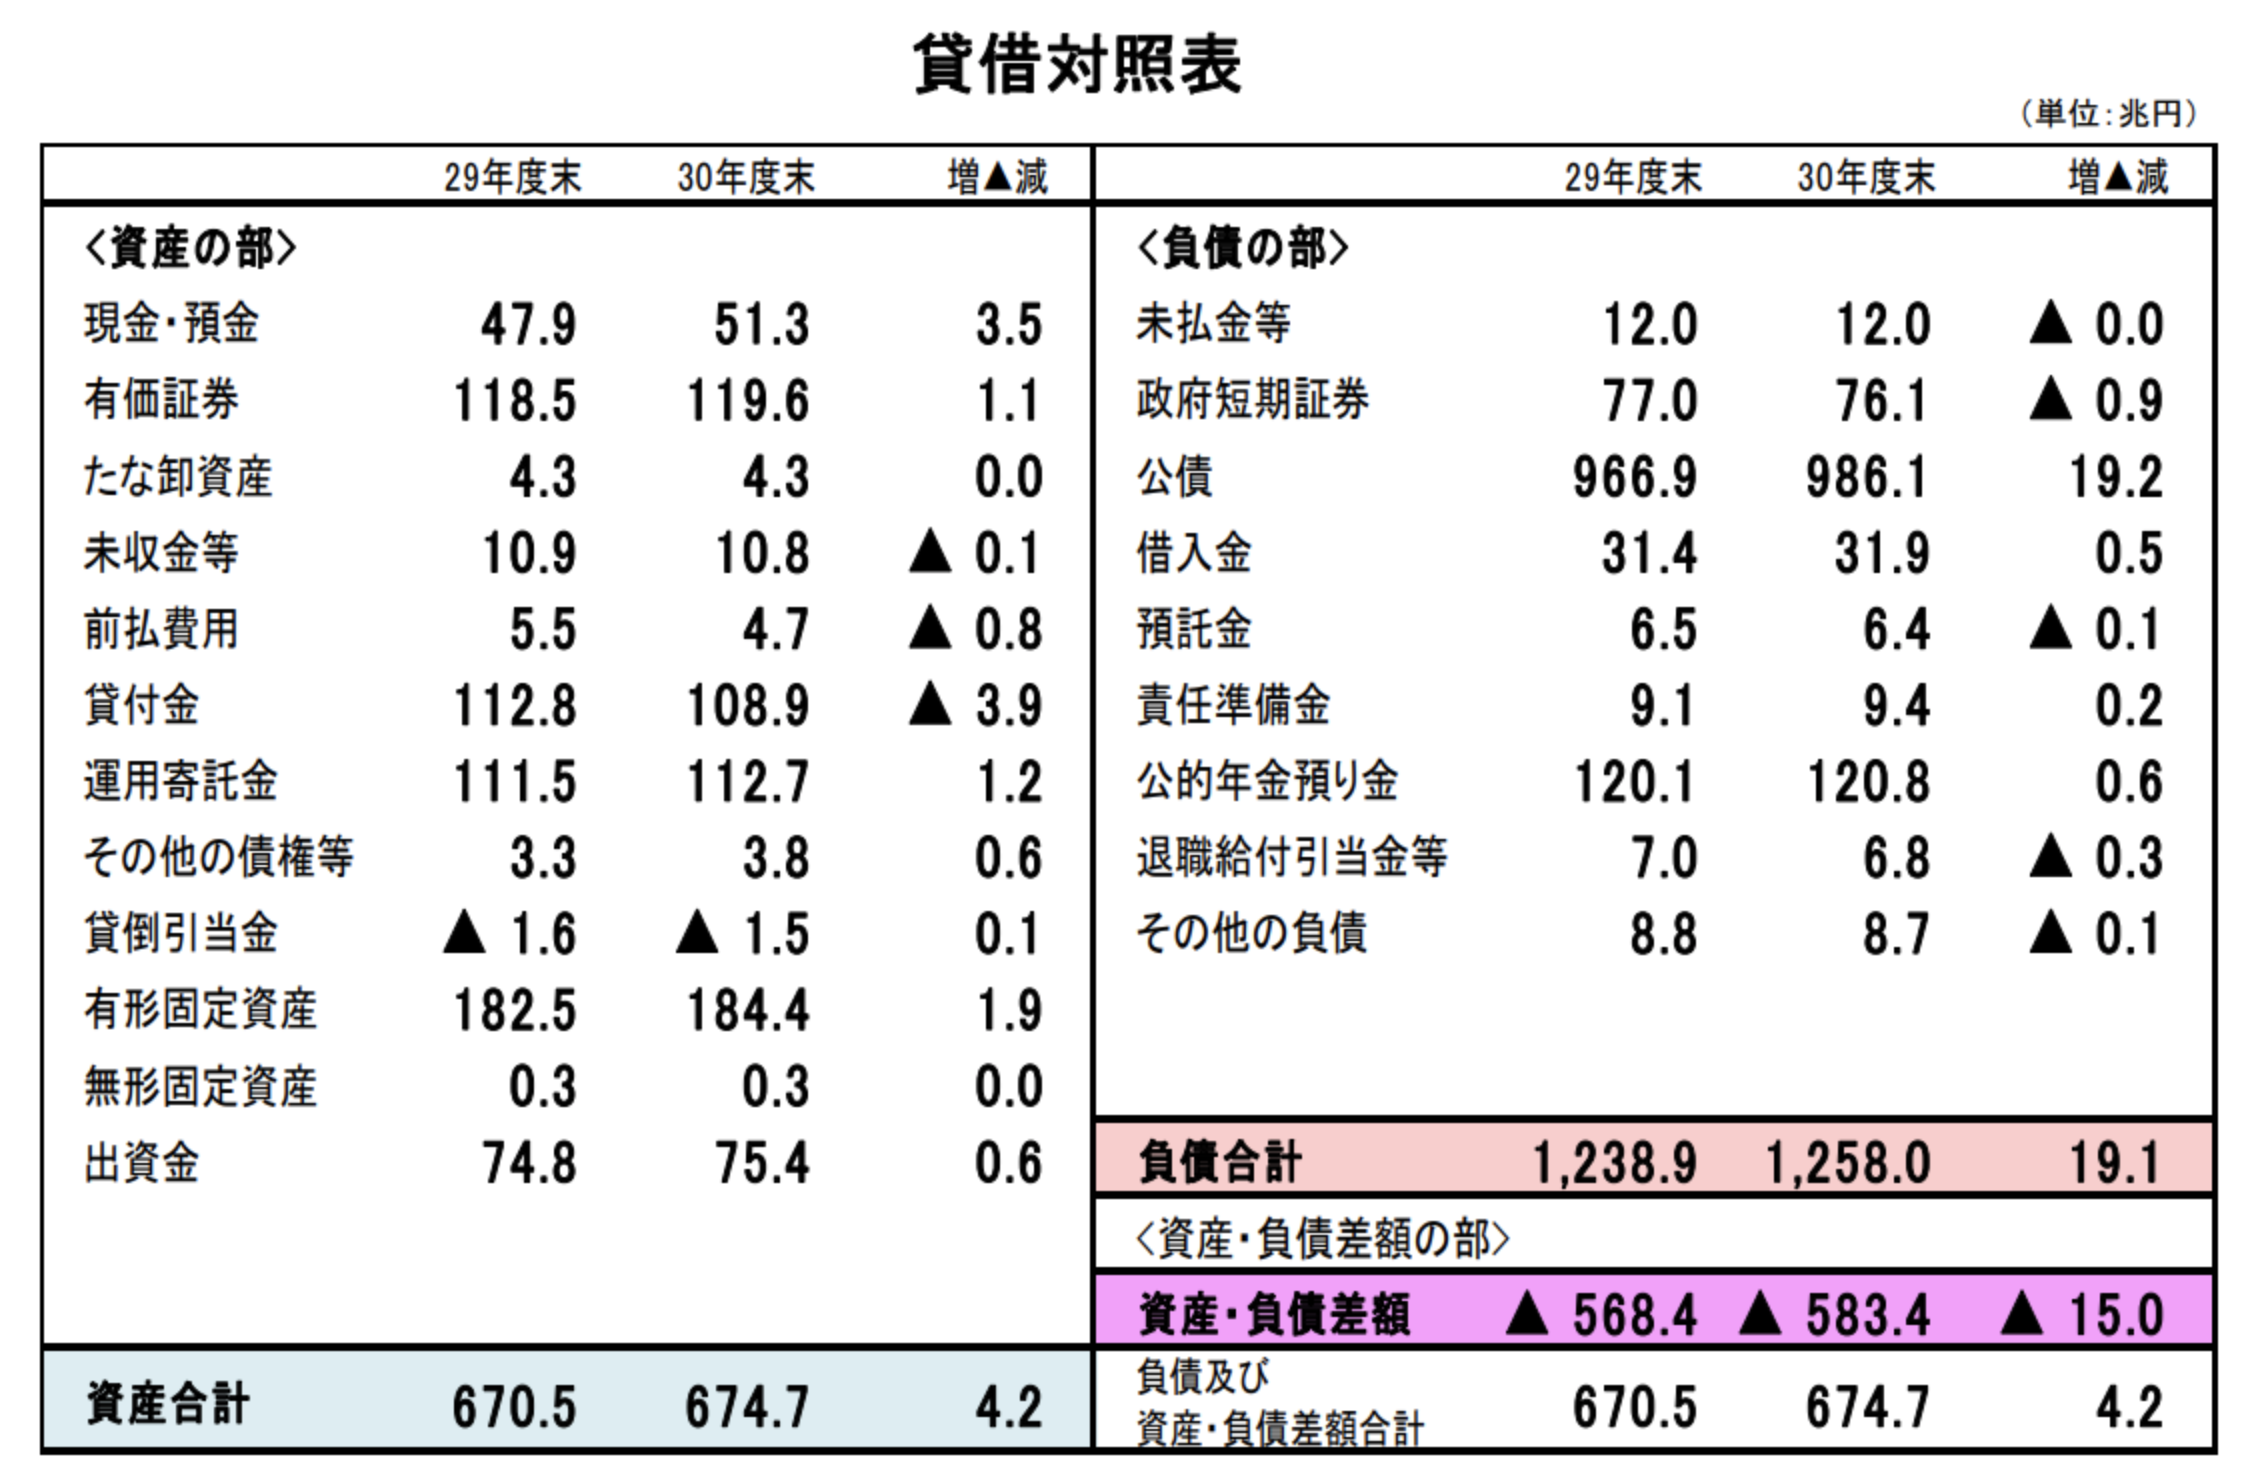 日本の財務諸表